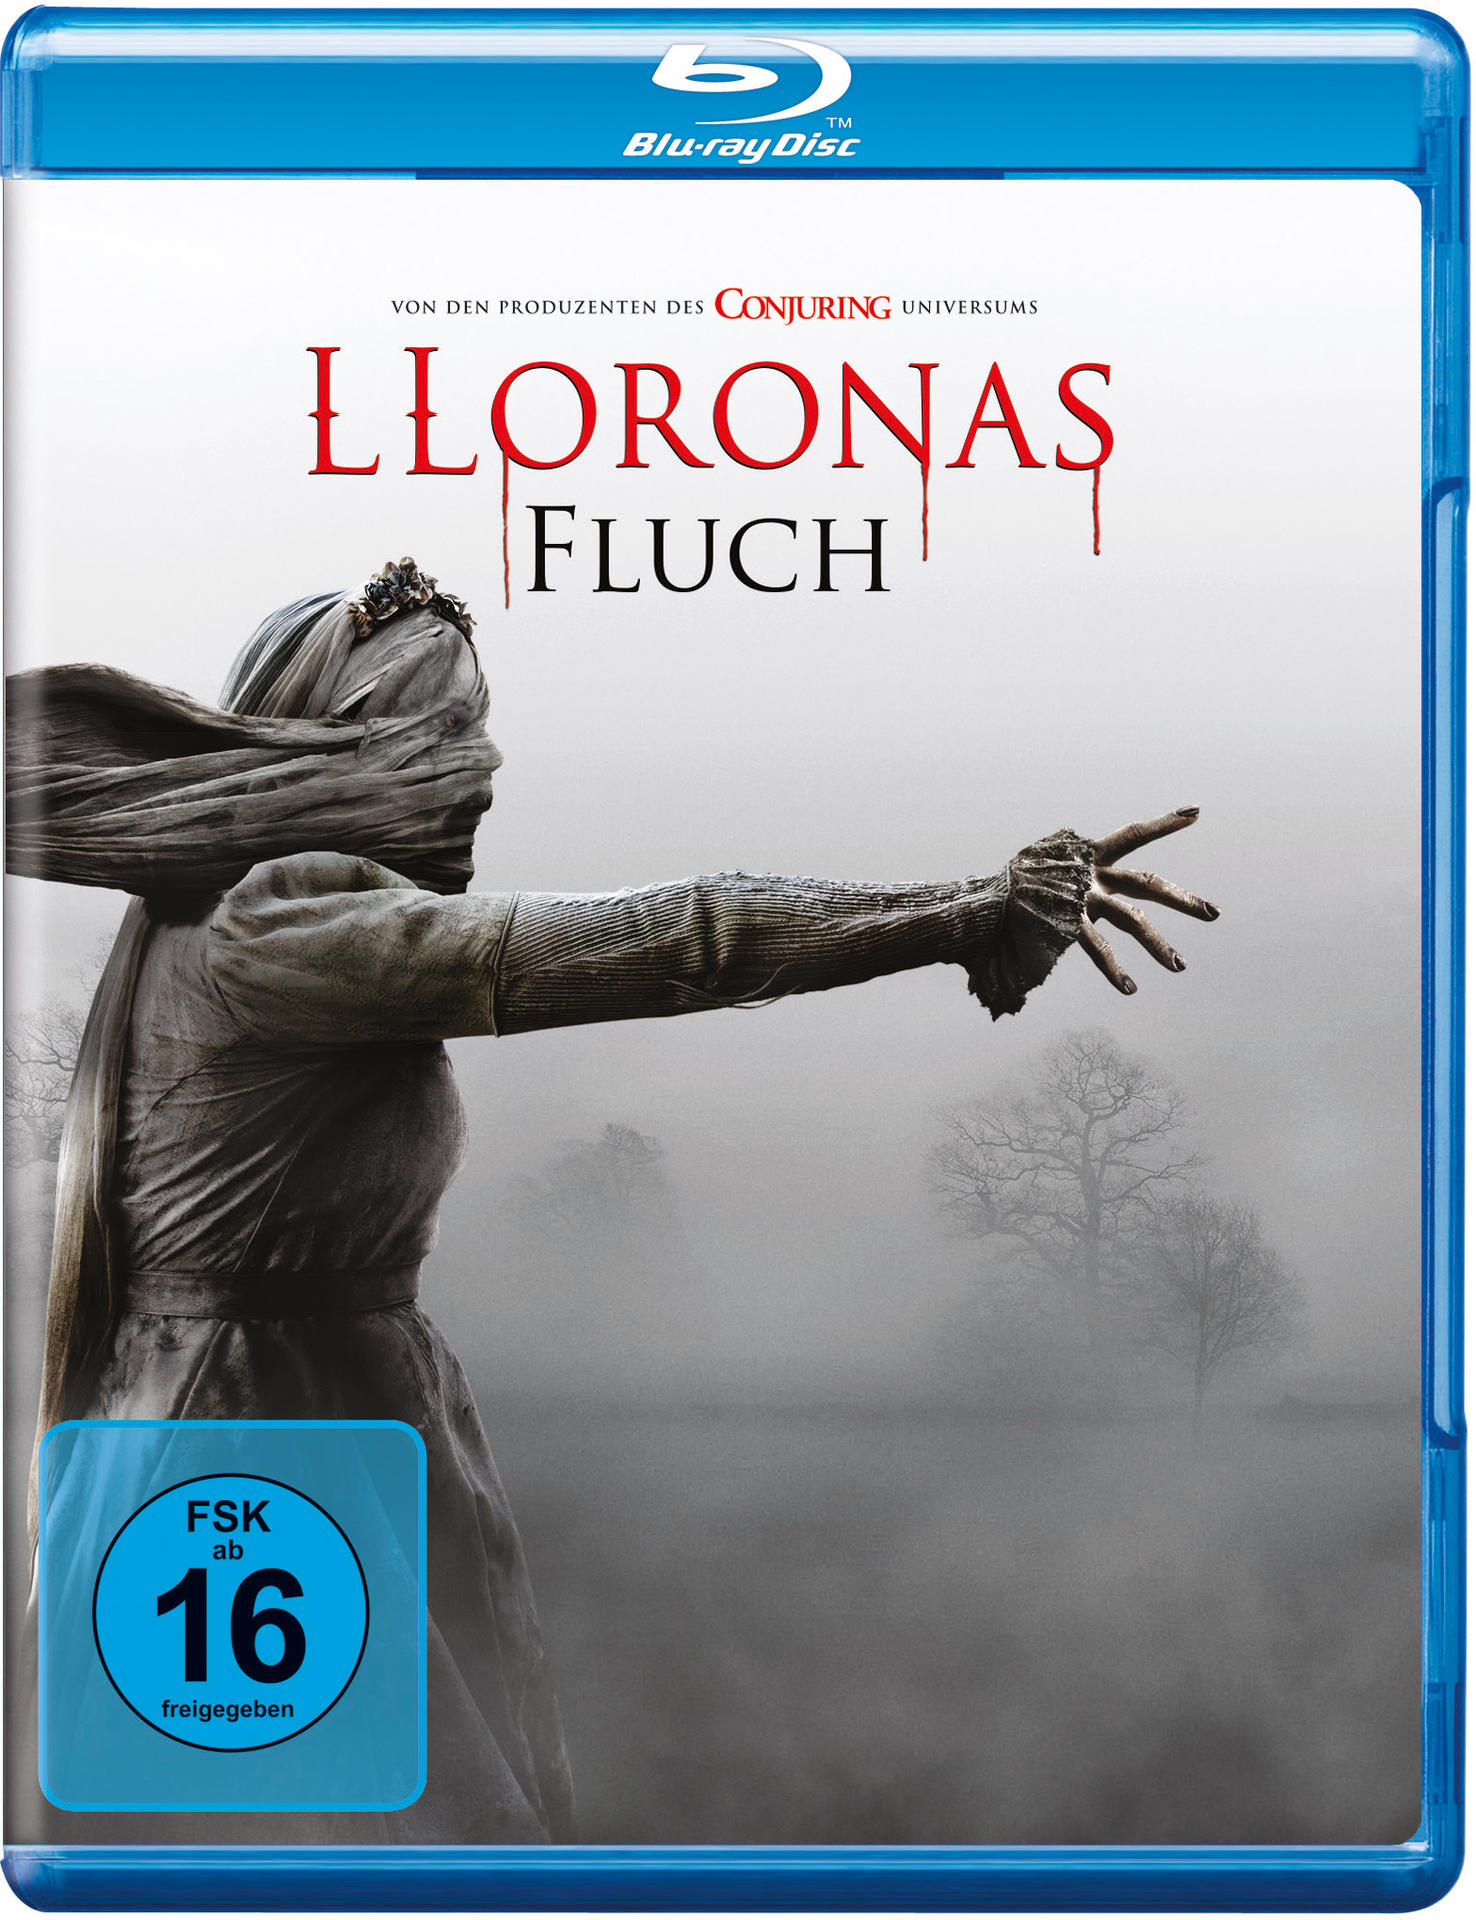 Fluch Lloronas Blu-ray